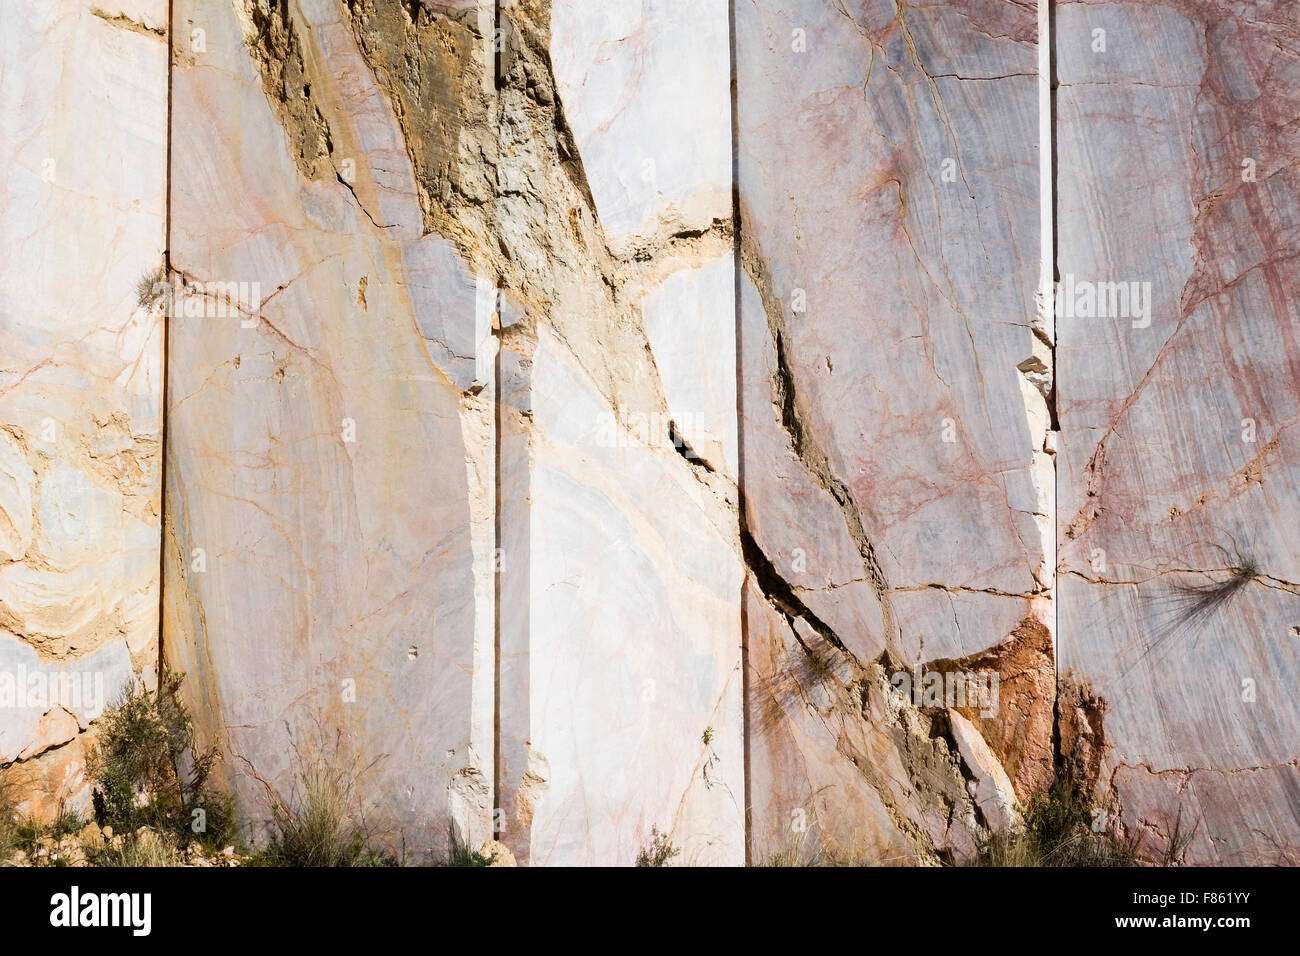 Marmor-Steinbruch in der Sierra De La Nieves, Yunquera, Andalusien, Spanien. Stockfoto